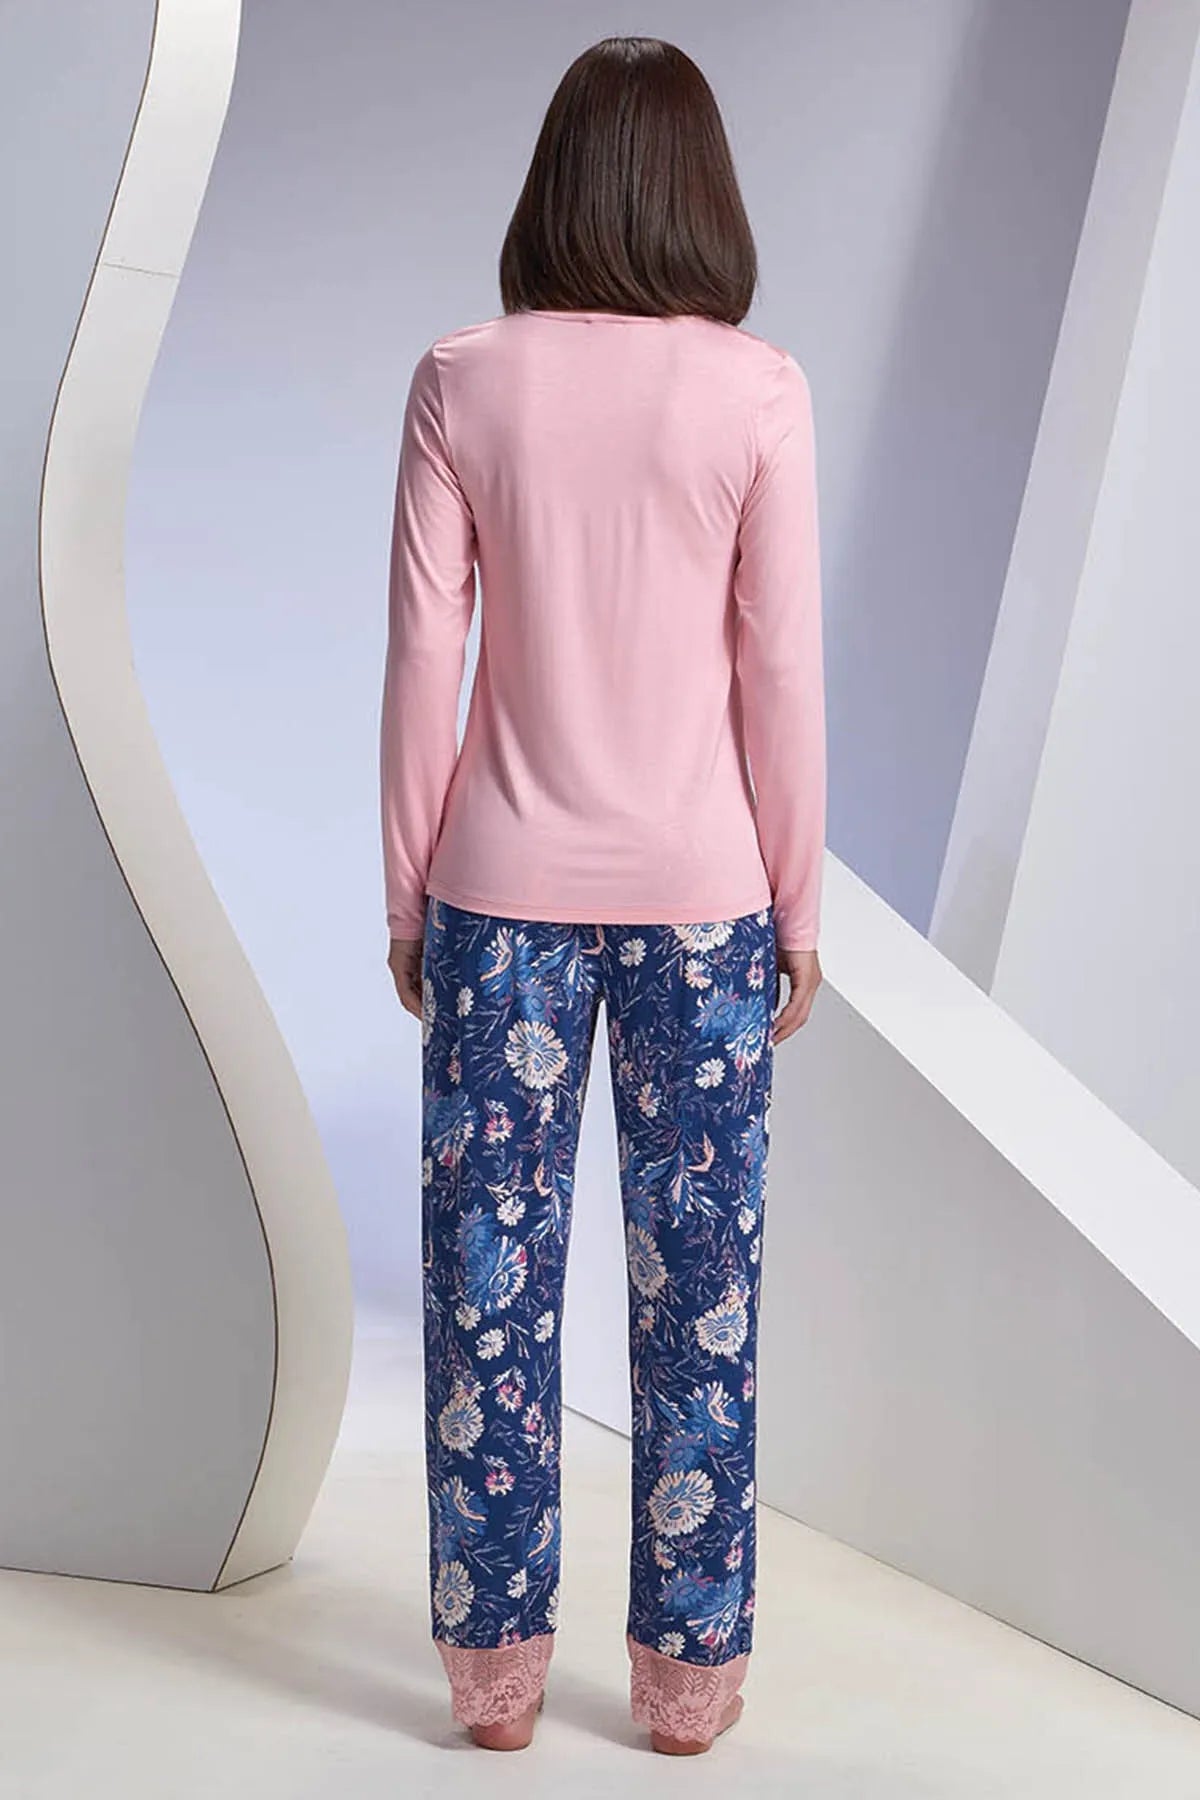 Pink - Navy blue Women's Pajama Set